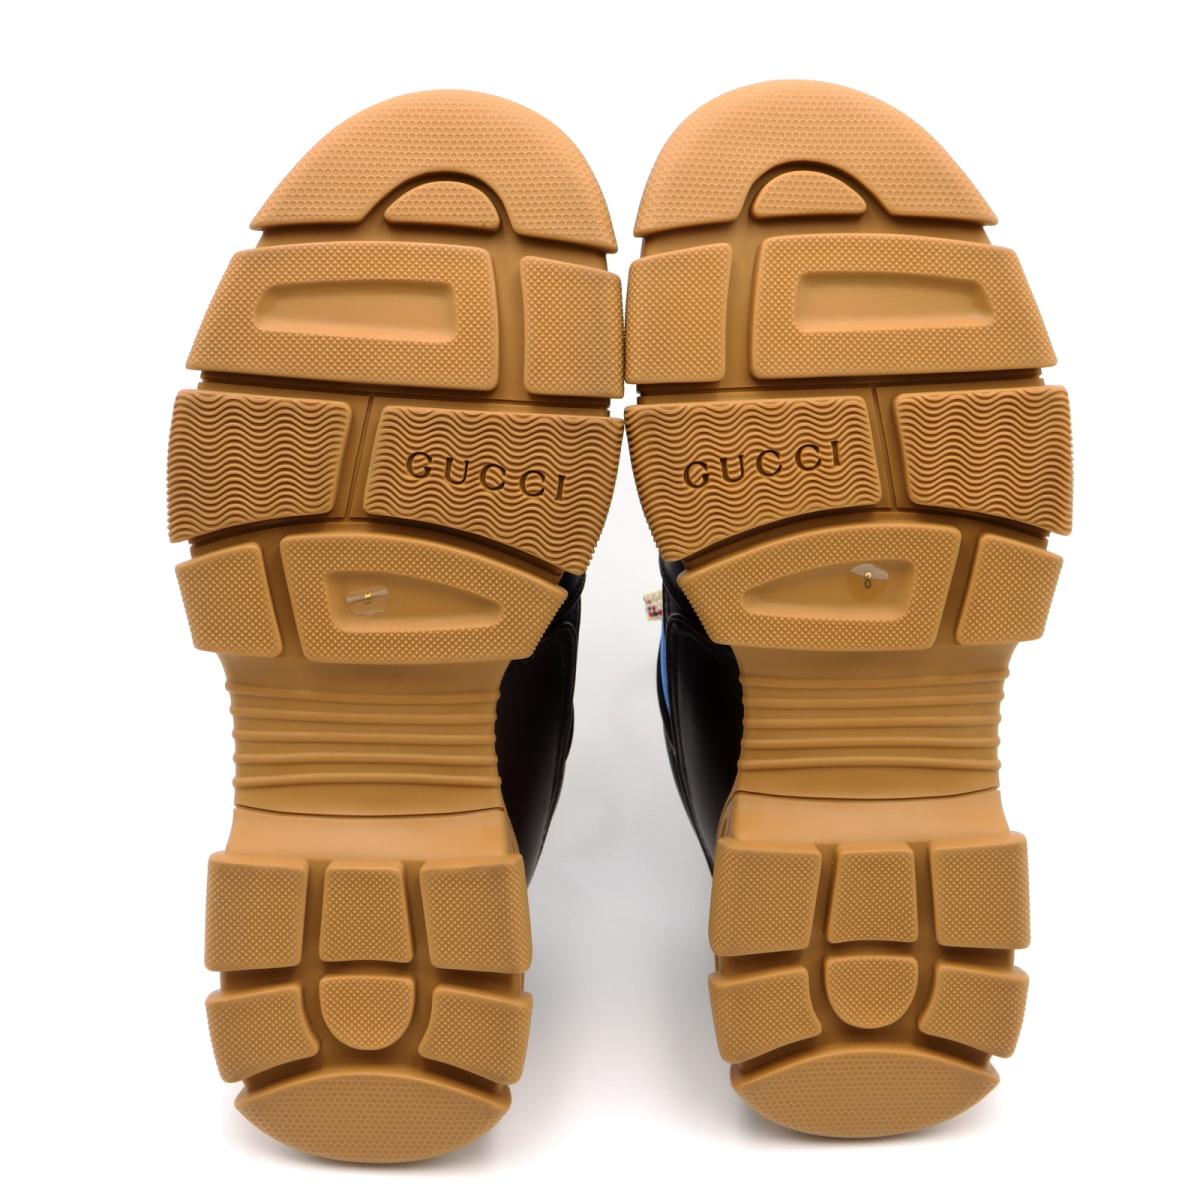 グッチ GUCCI スニーカー 2020春 靴 その他靴 靴 レザー x ラバー メンズ ブラウン系 / ブルー系 / | Brandoff銀座